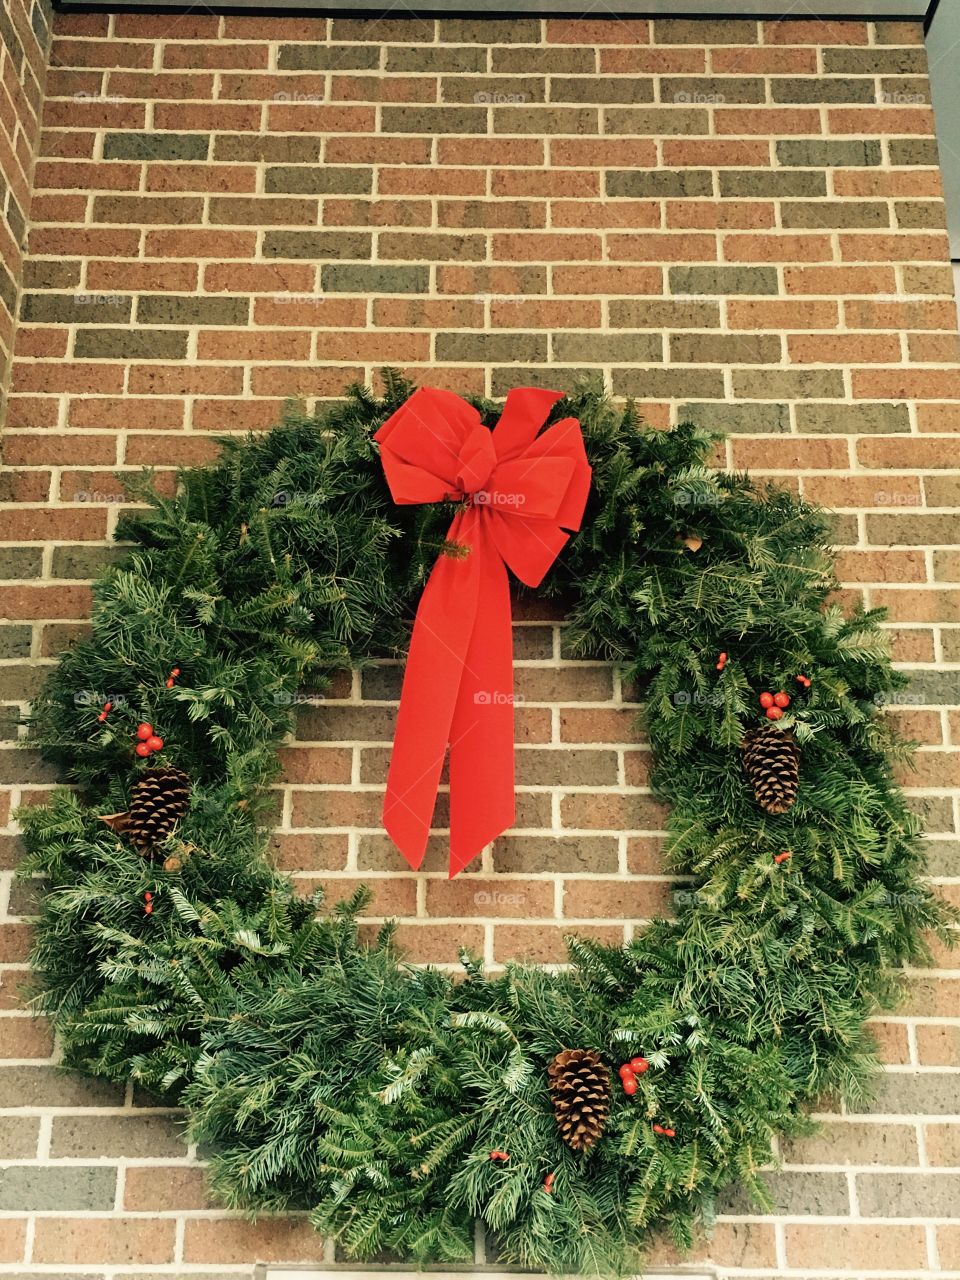 Hospital wreath 